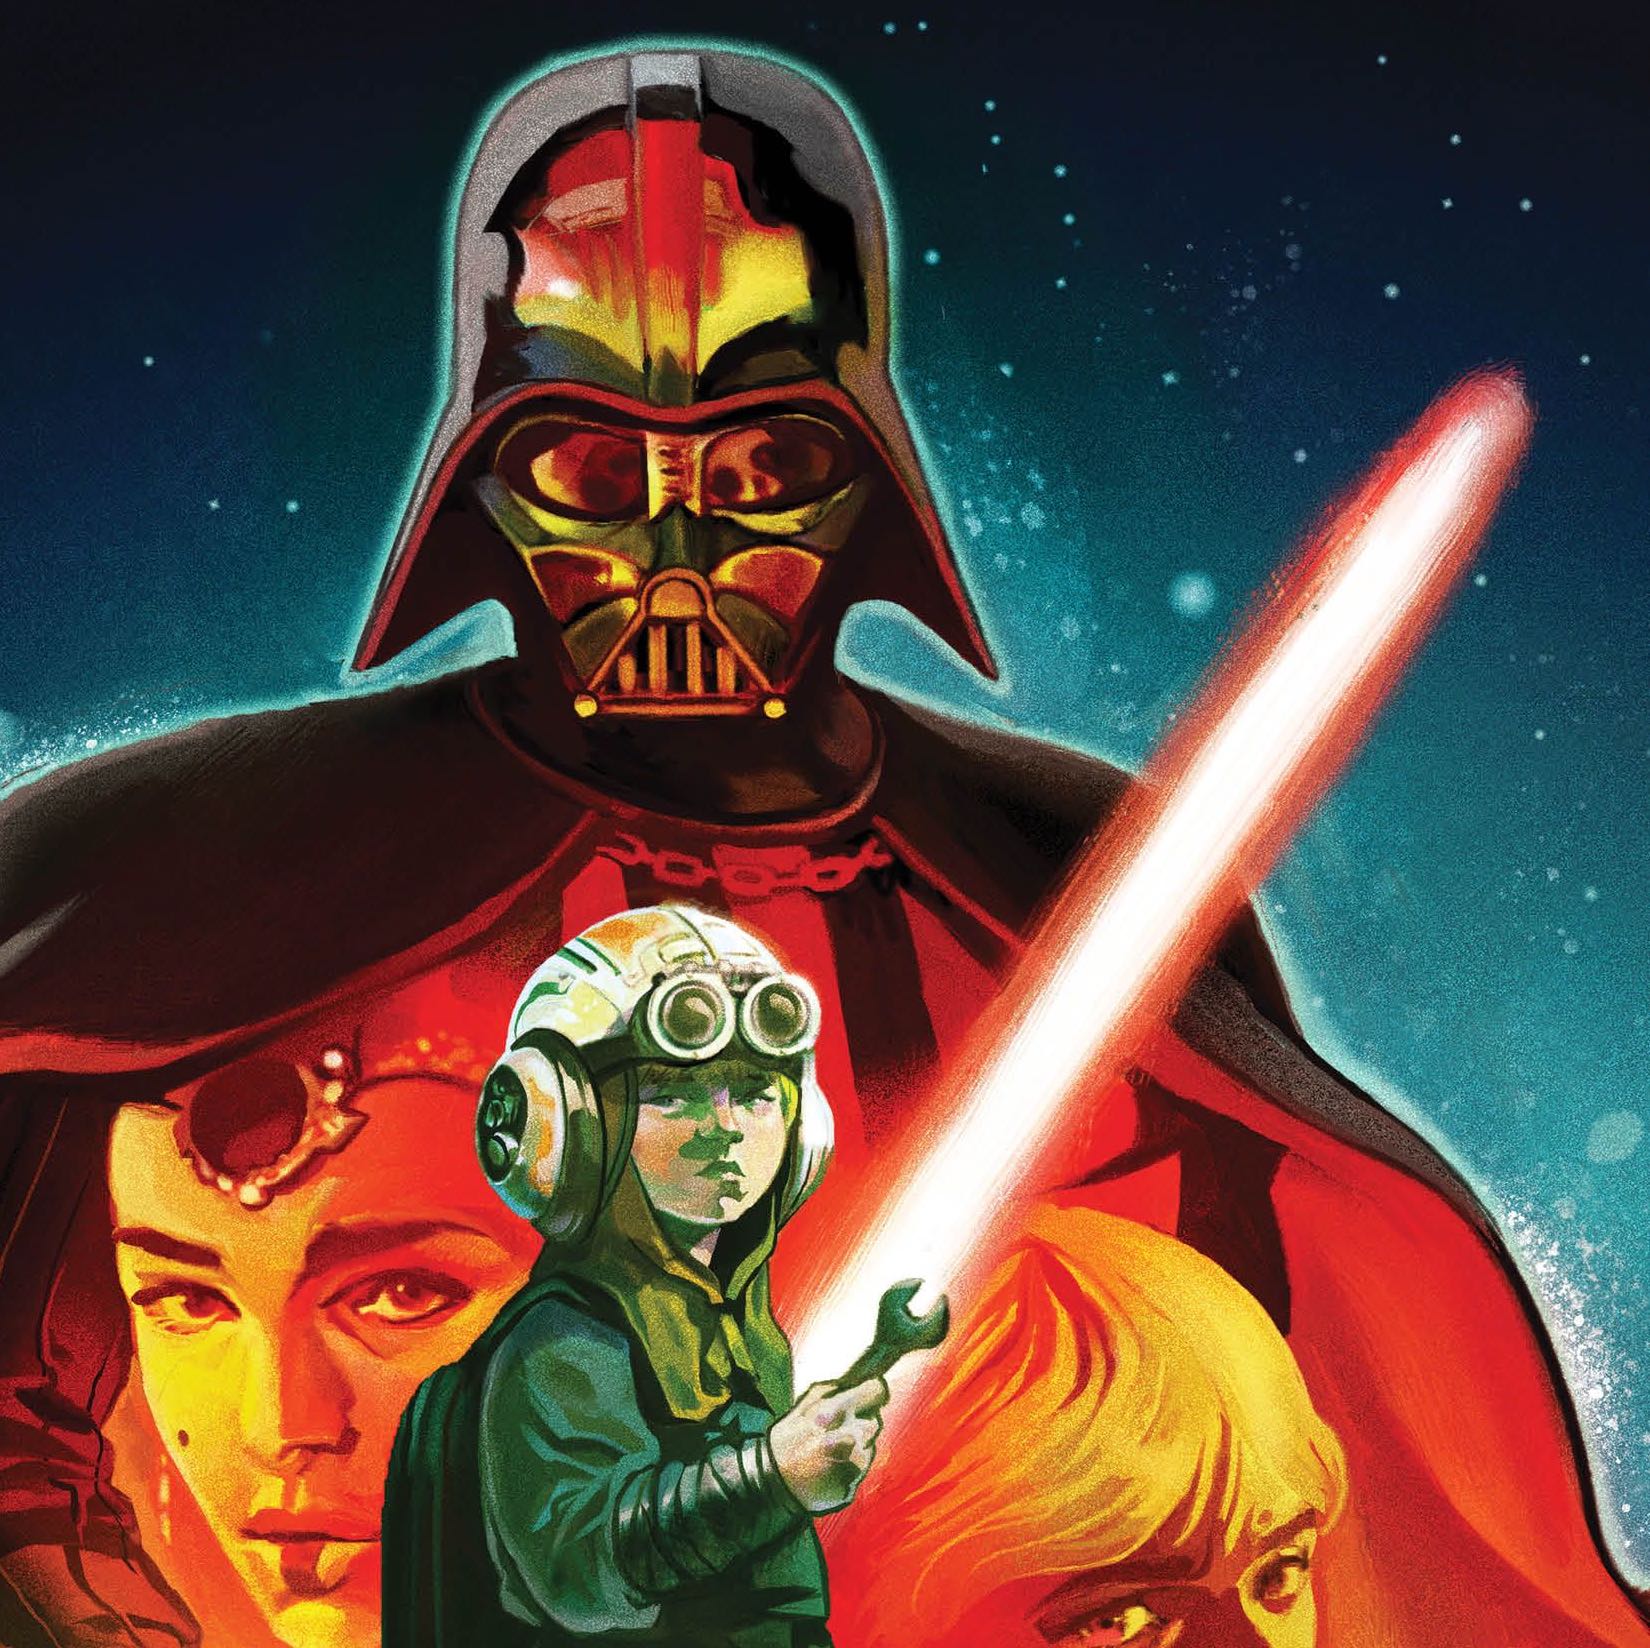 Star Wars: Darth Vader #1 Review